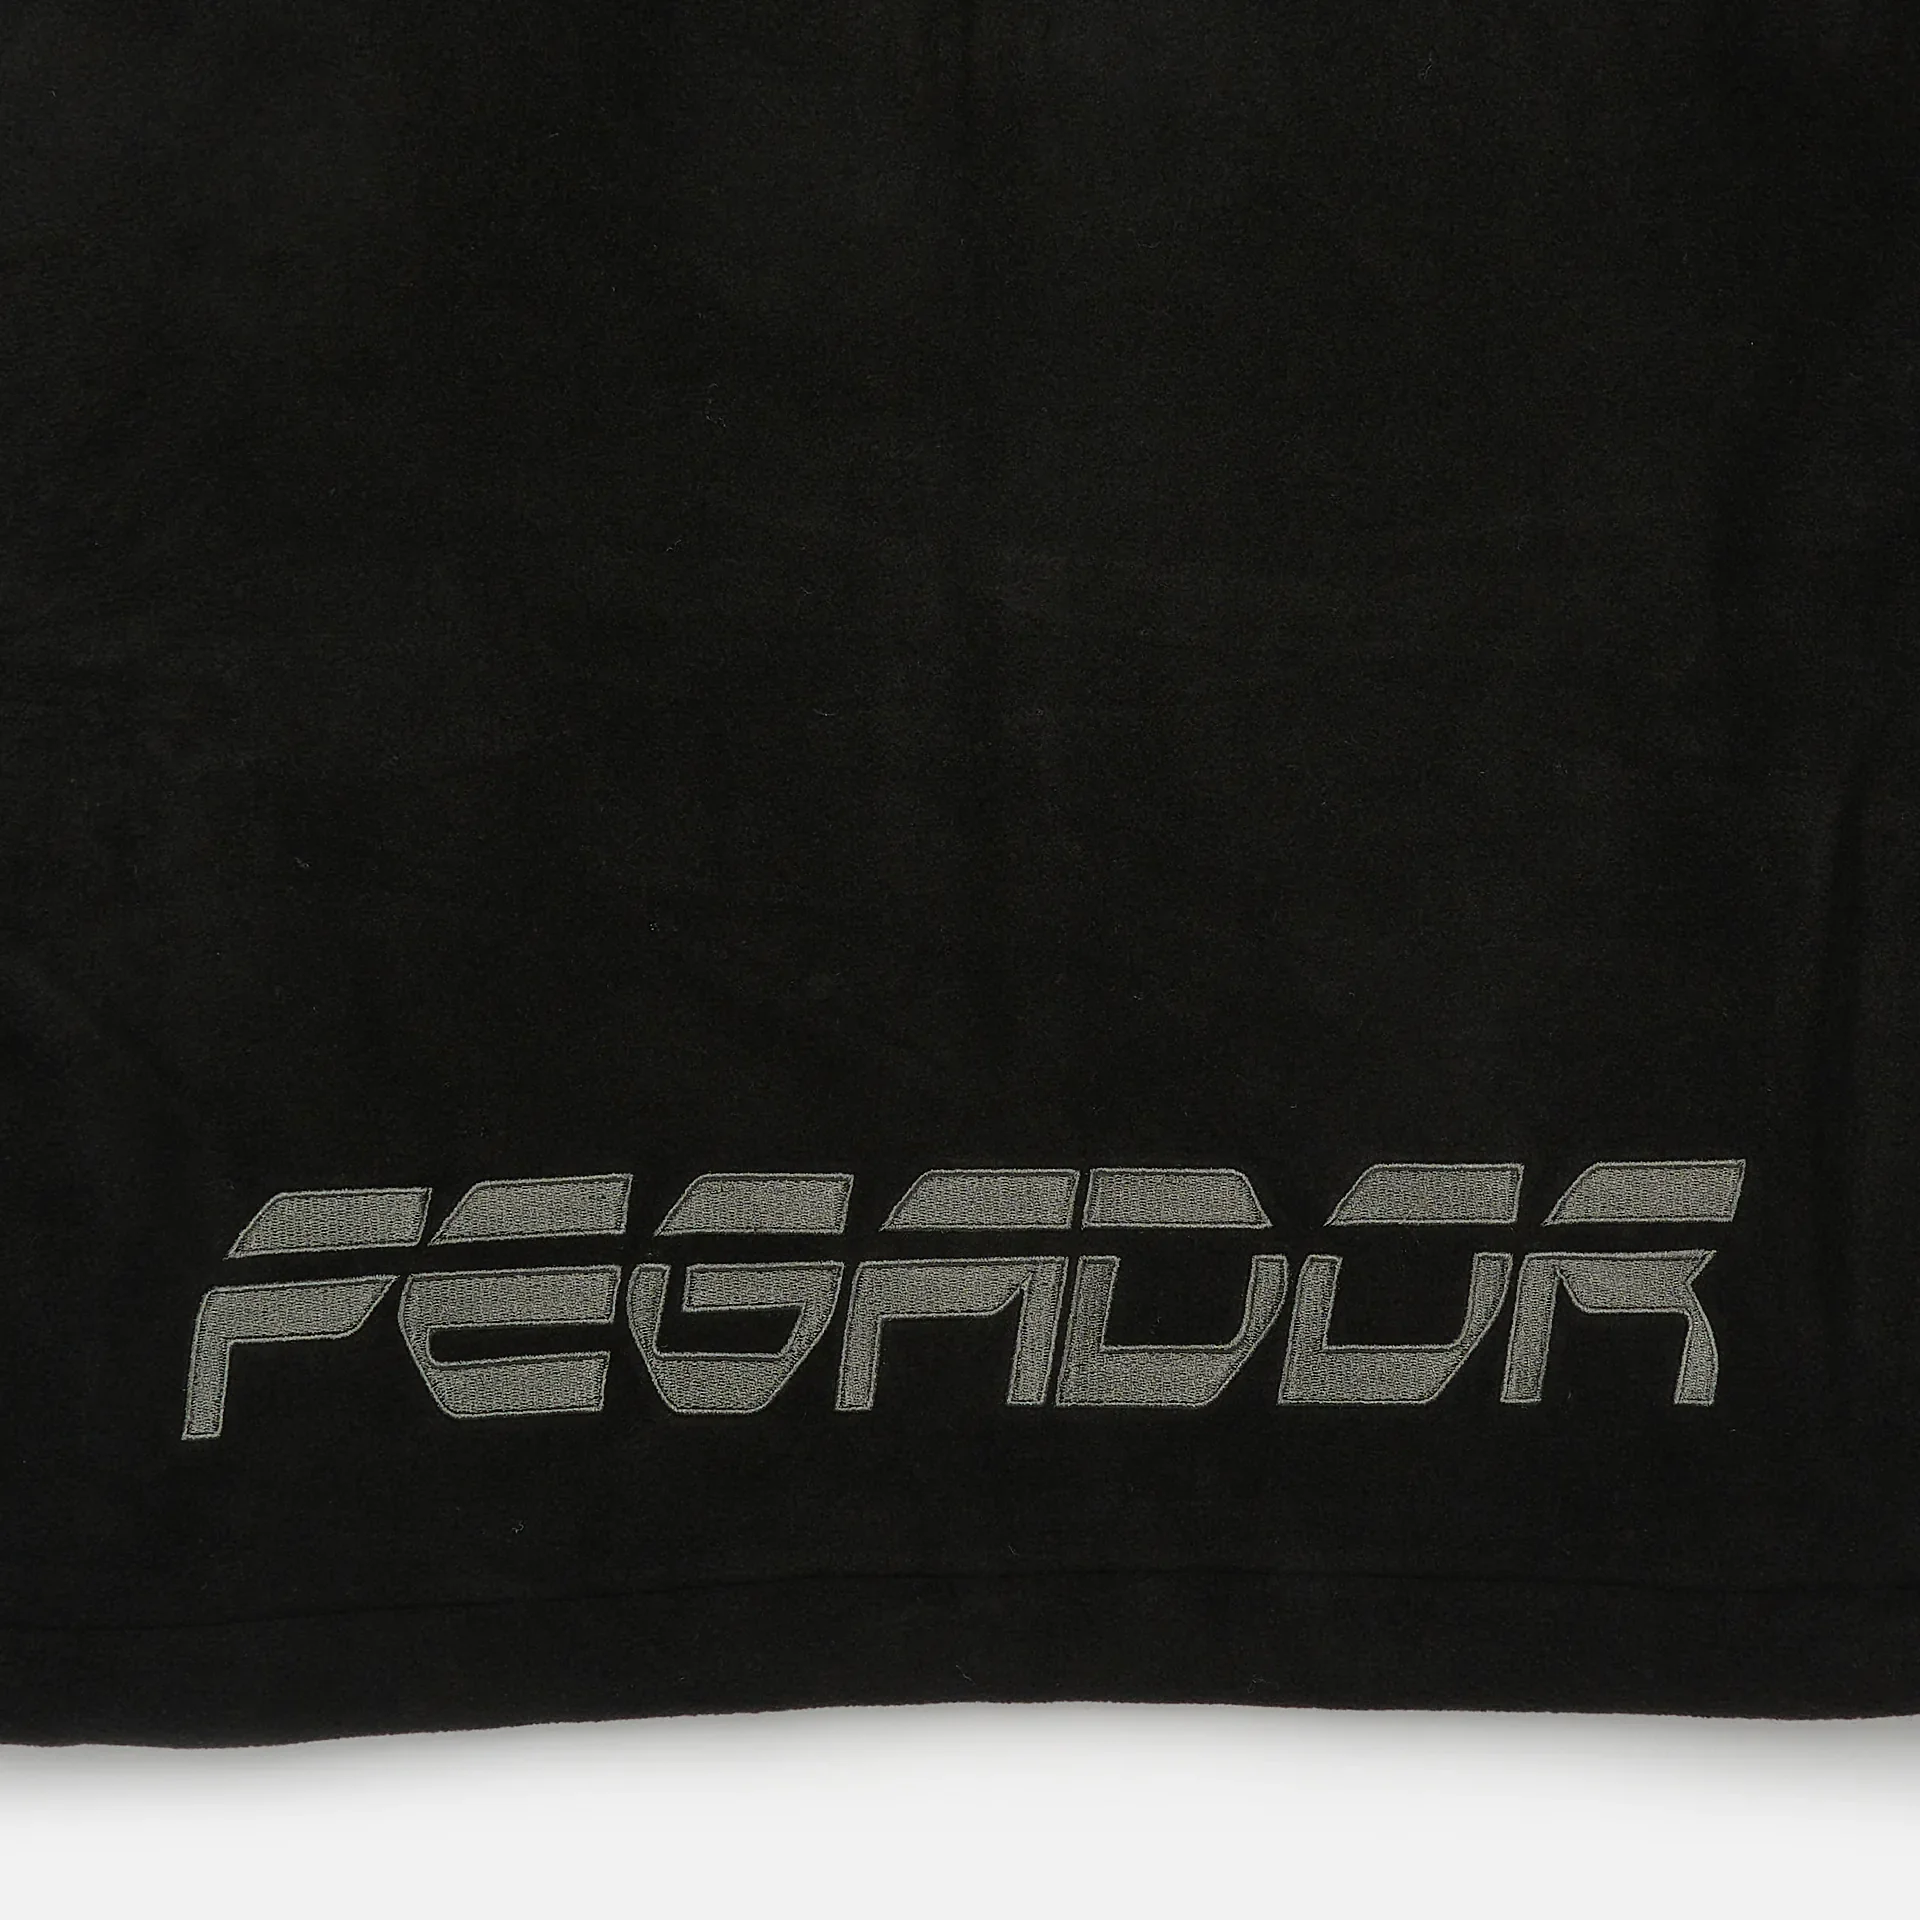 PEGADOR Trance Fleece Jacket Black